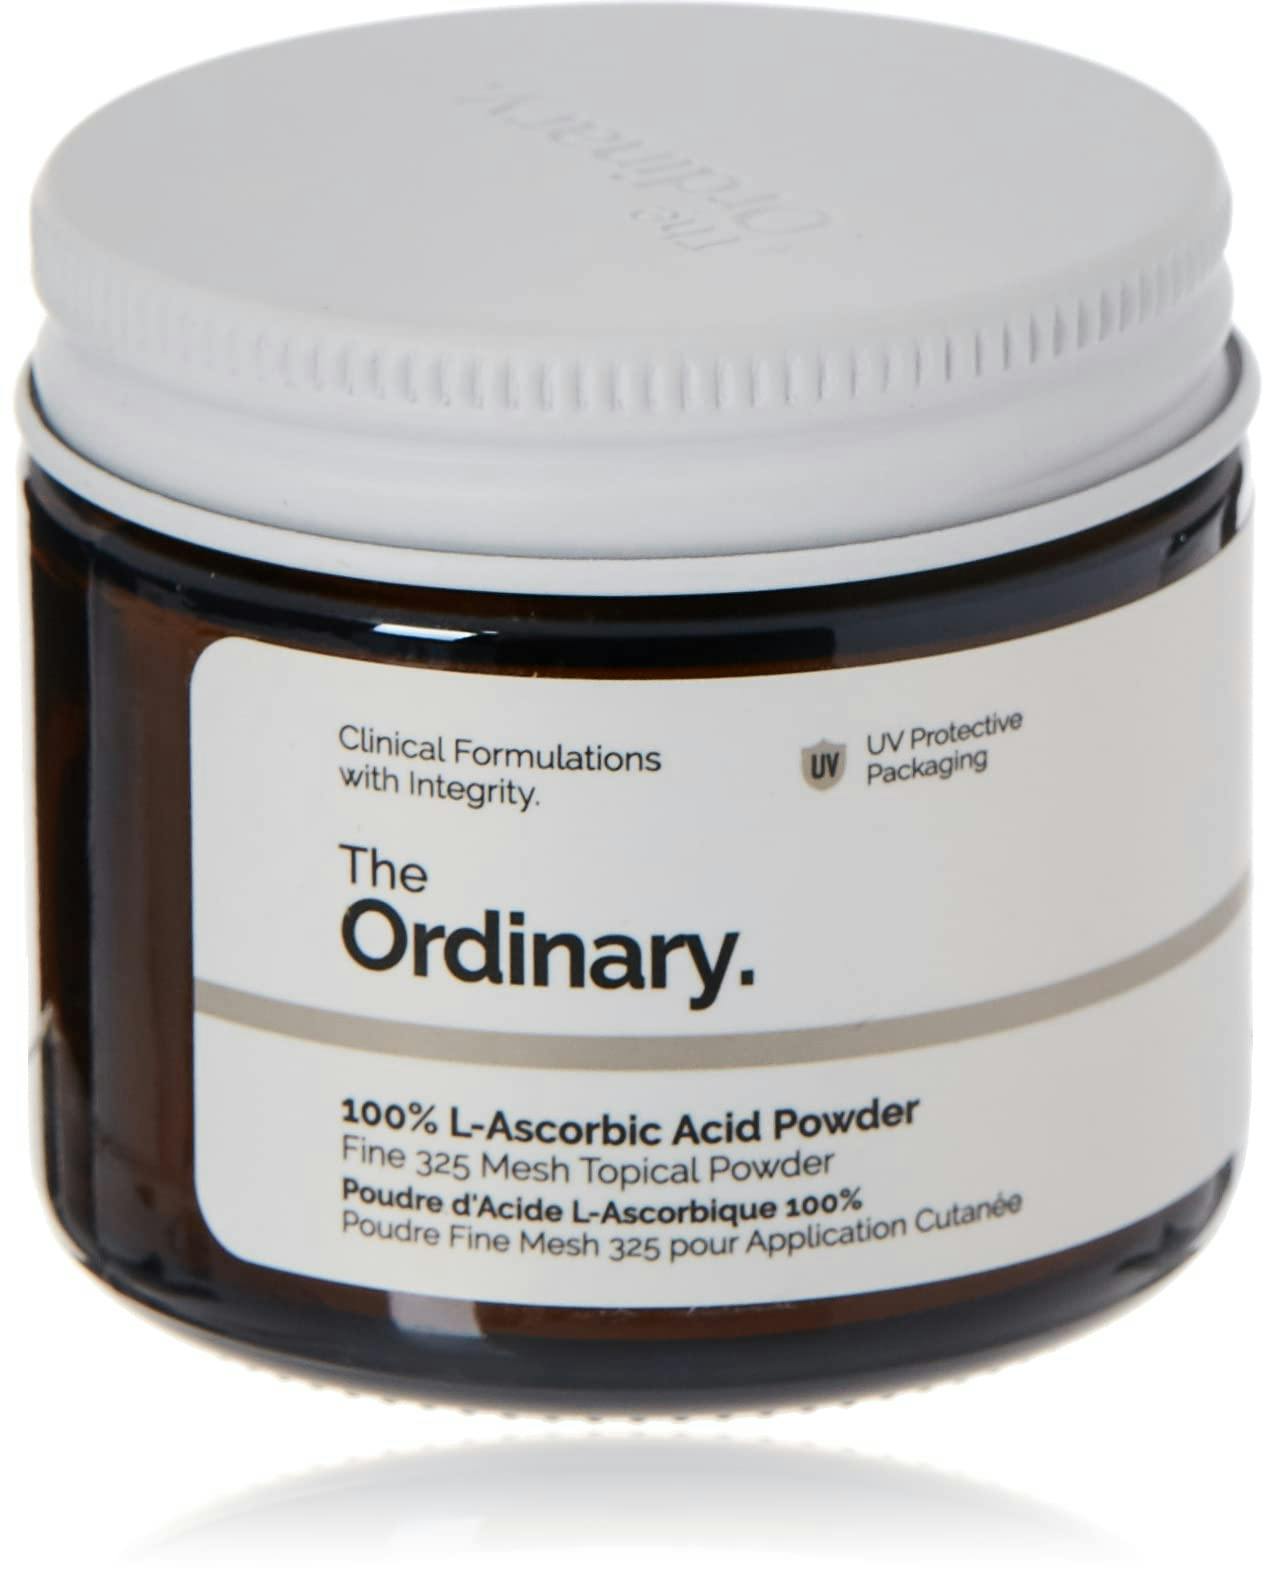 The Ordinary 100% L-Ascorbic Acid Powder Вітамін С у порошку